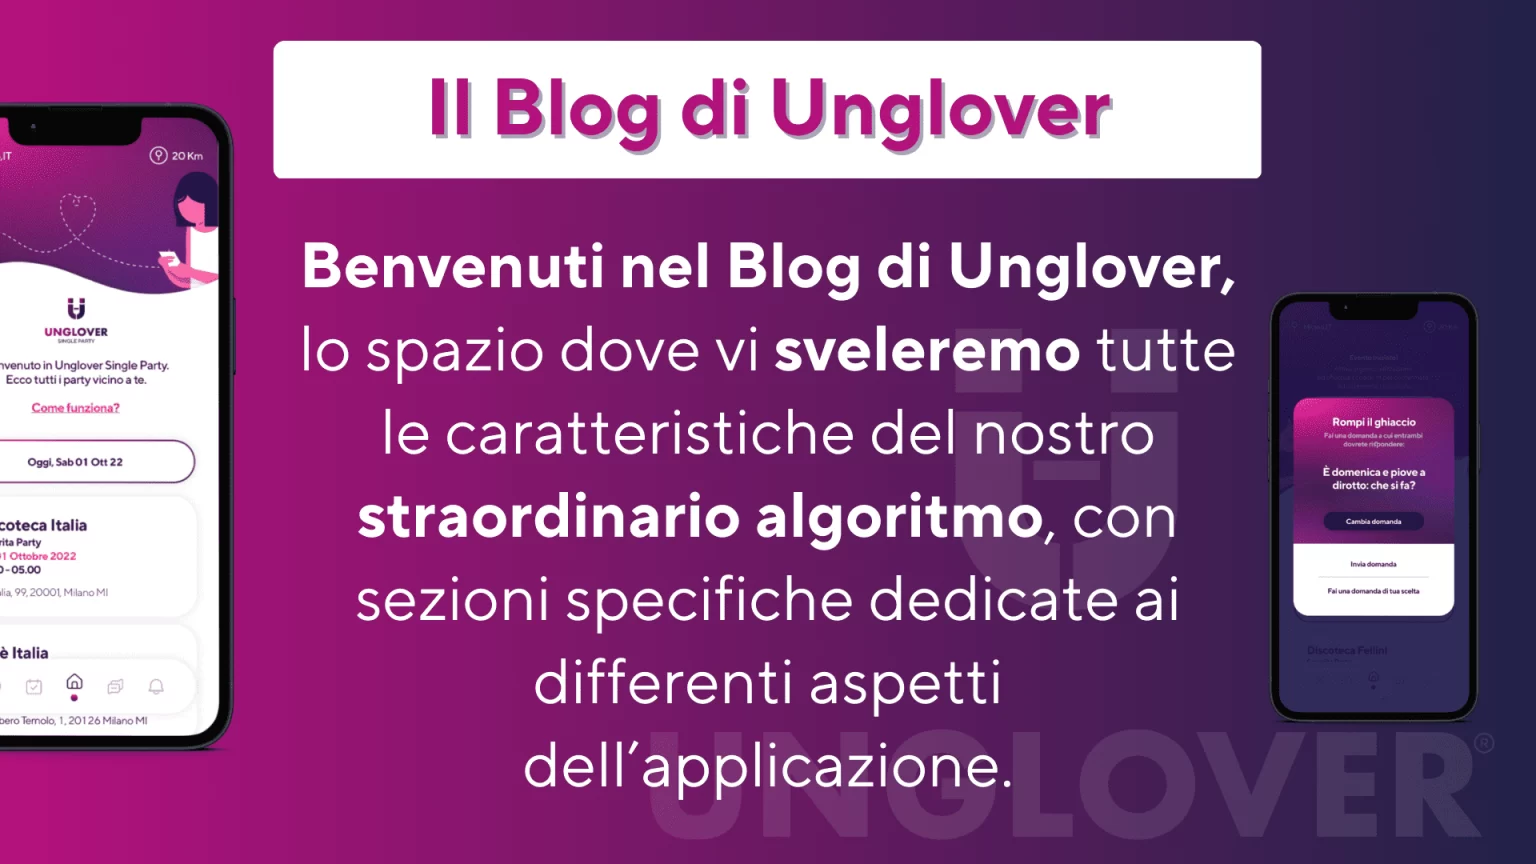 Il Blog di Unglover